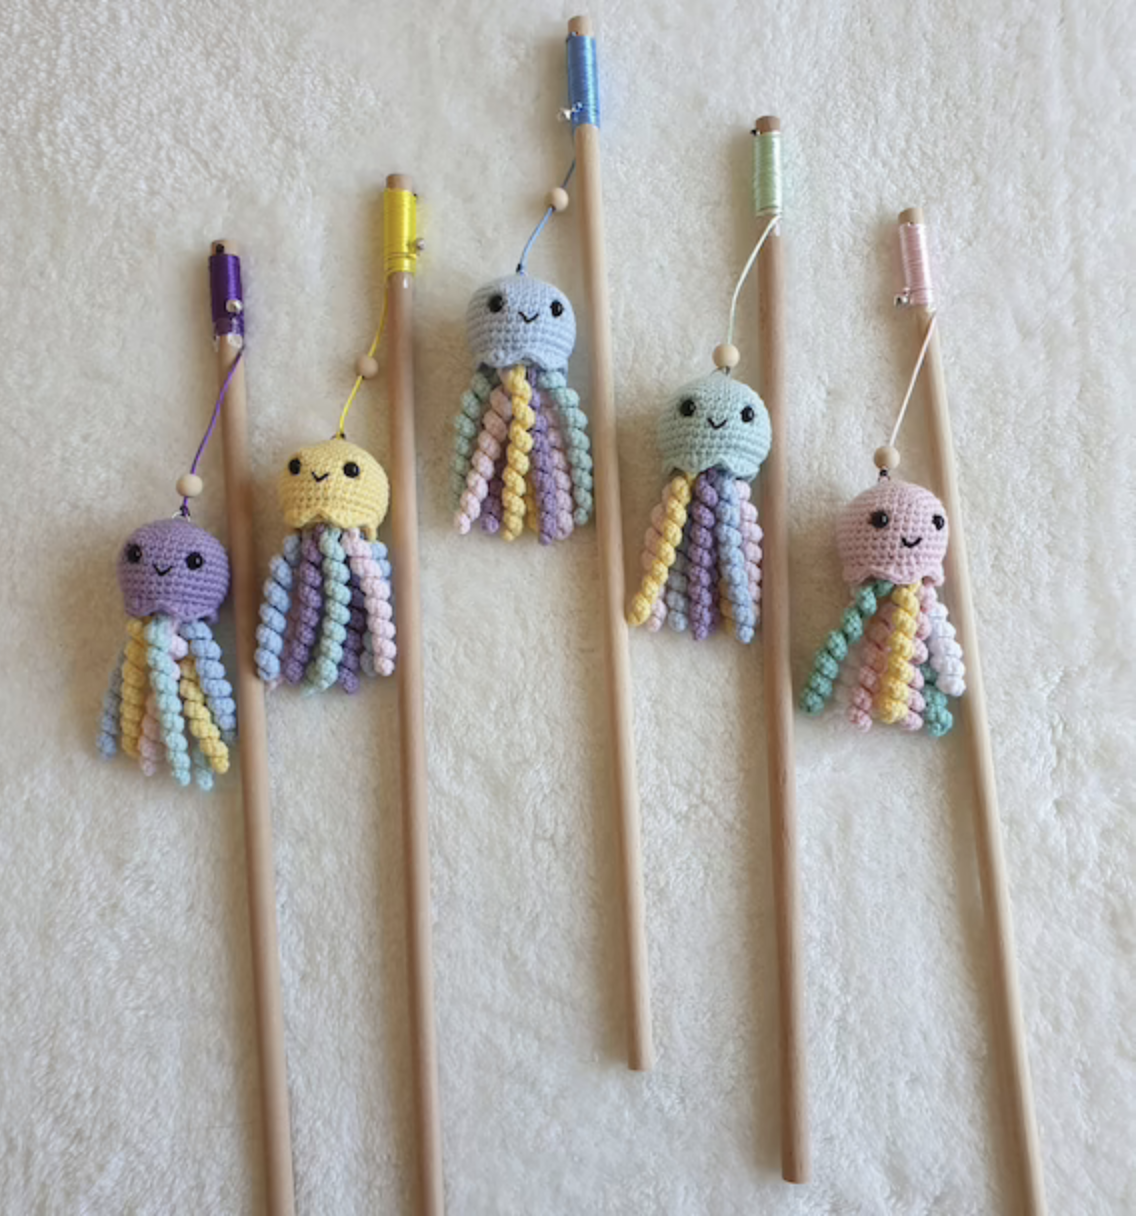 Woven octopus toys on sticks